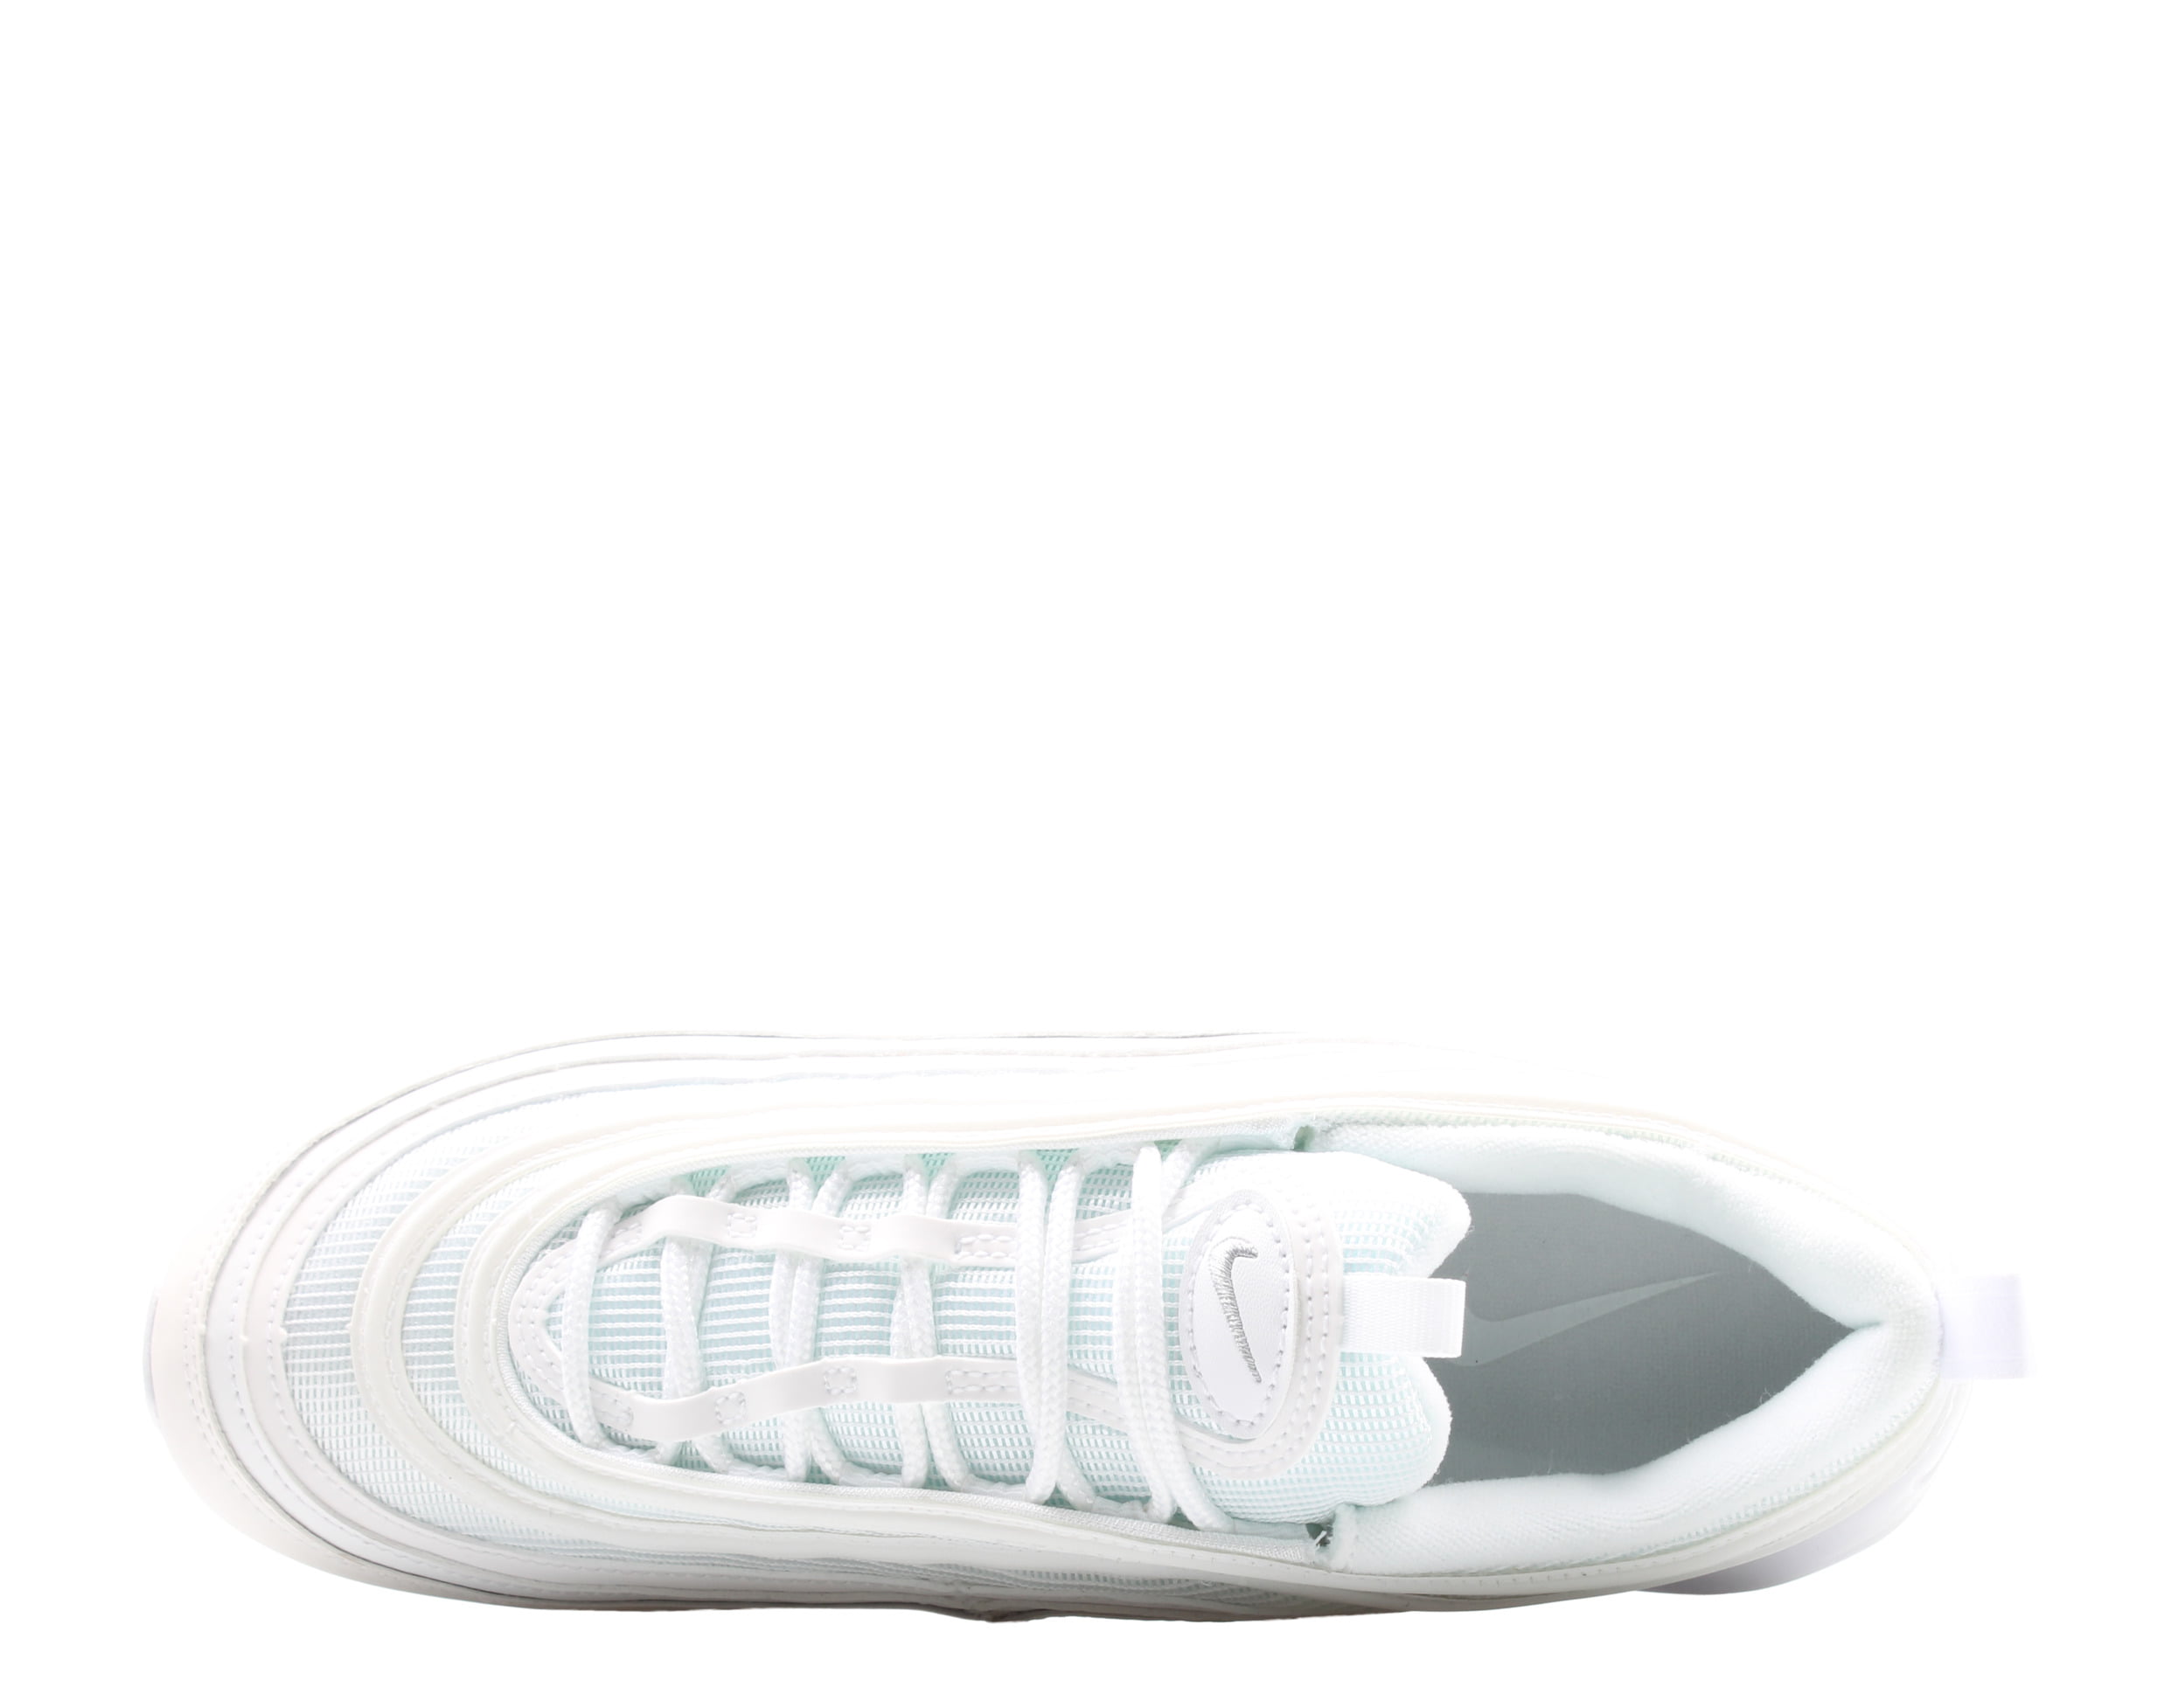 Nike Air Max 97 Triple White 921826-101 - Sneaker Bar Detroit